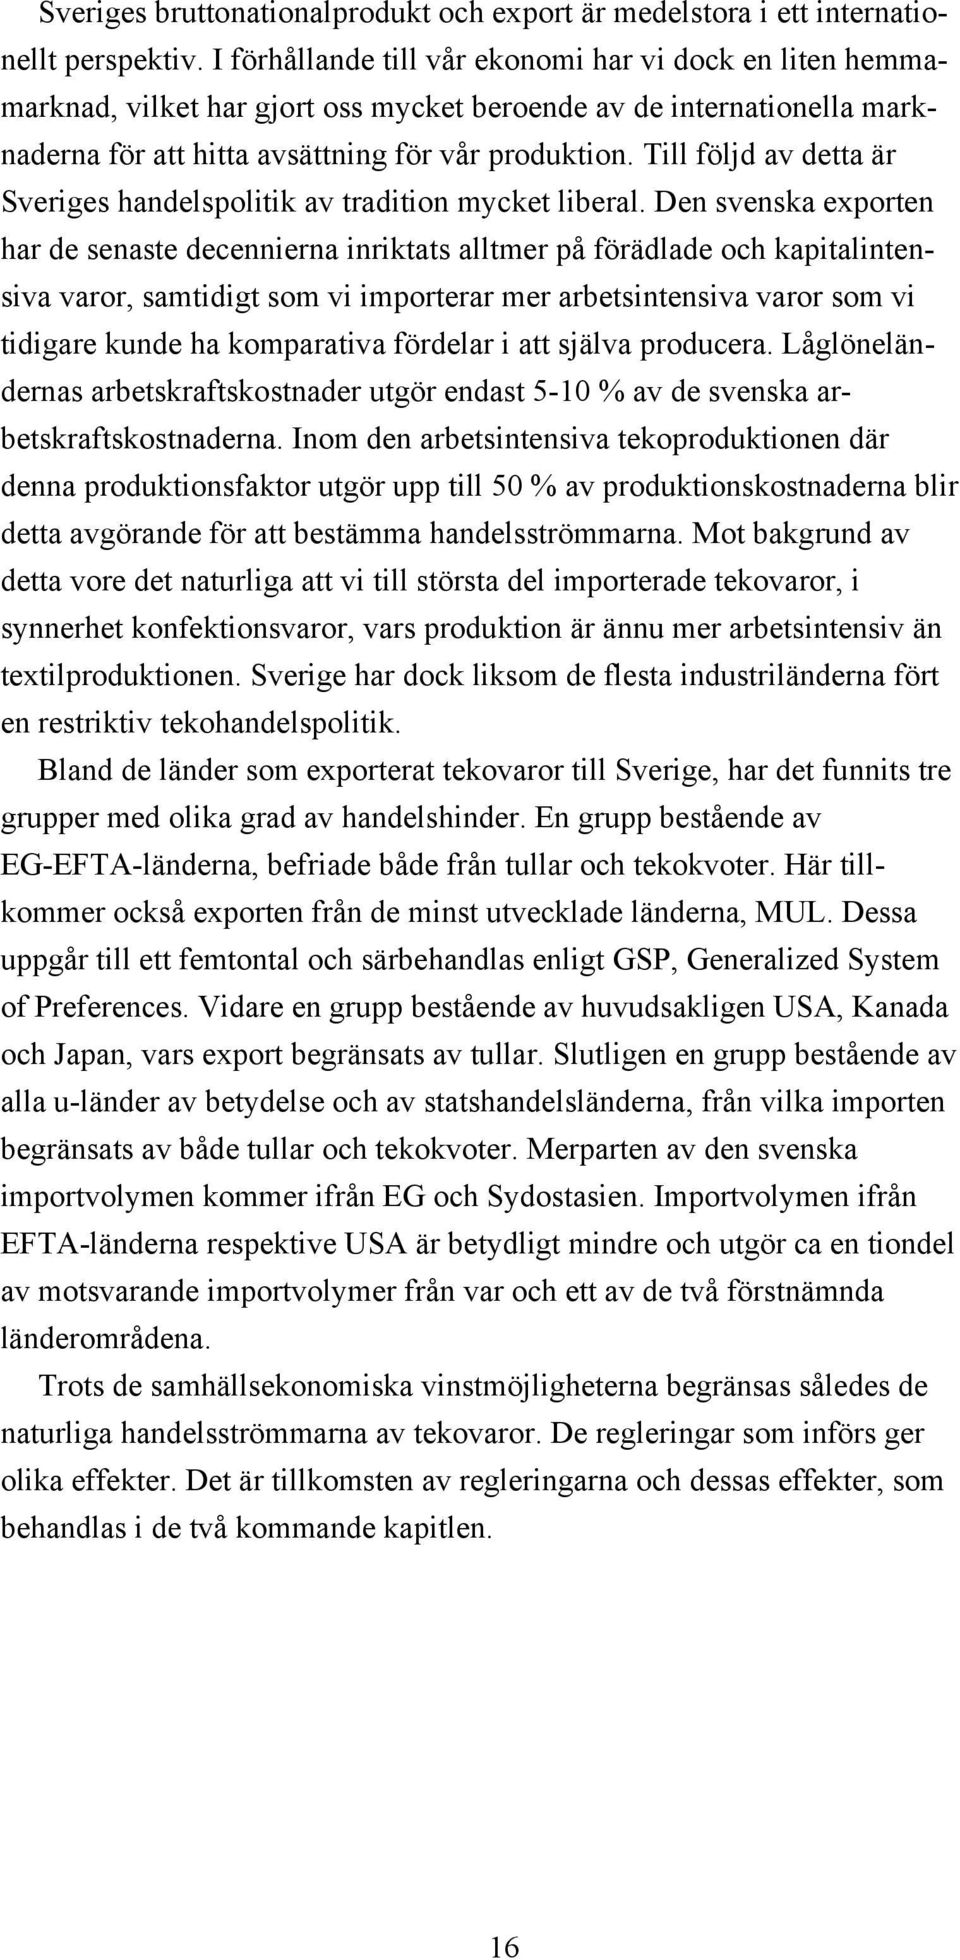 Till följd av detta är Sveriges handelspolitik av tradition mycket liberal.